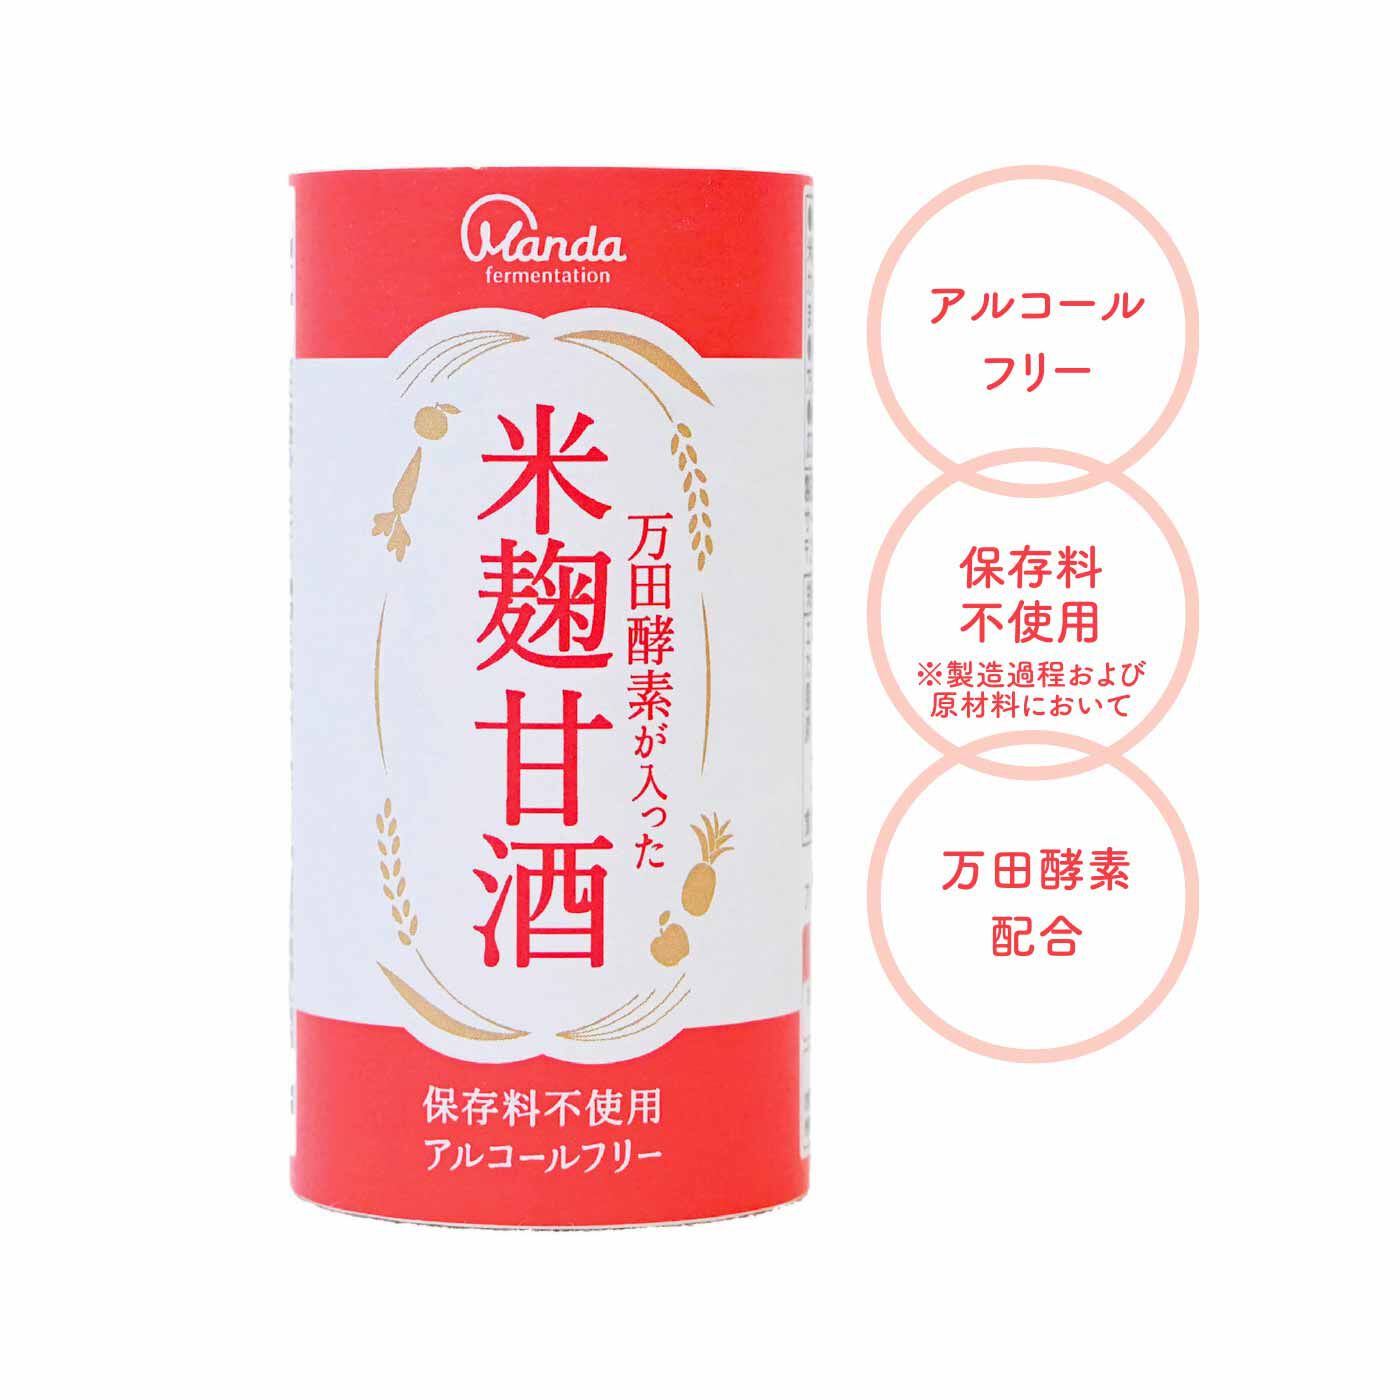 FELISSIMO PARTNERS|甘さ控えめコクある味わい 万田酵素が入った米麹甘酒の会（3回予約）|缶の形状をした紙製の容器なので普通ゴミとして処分できます。